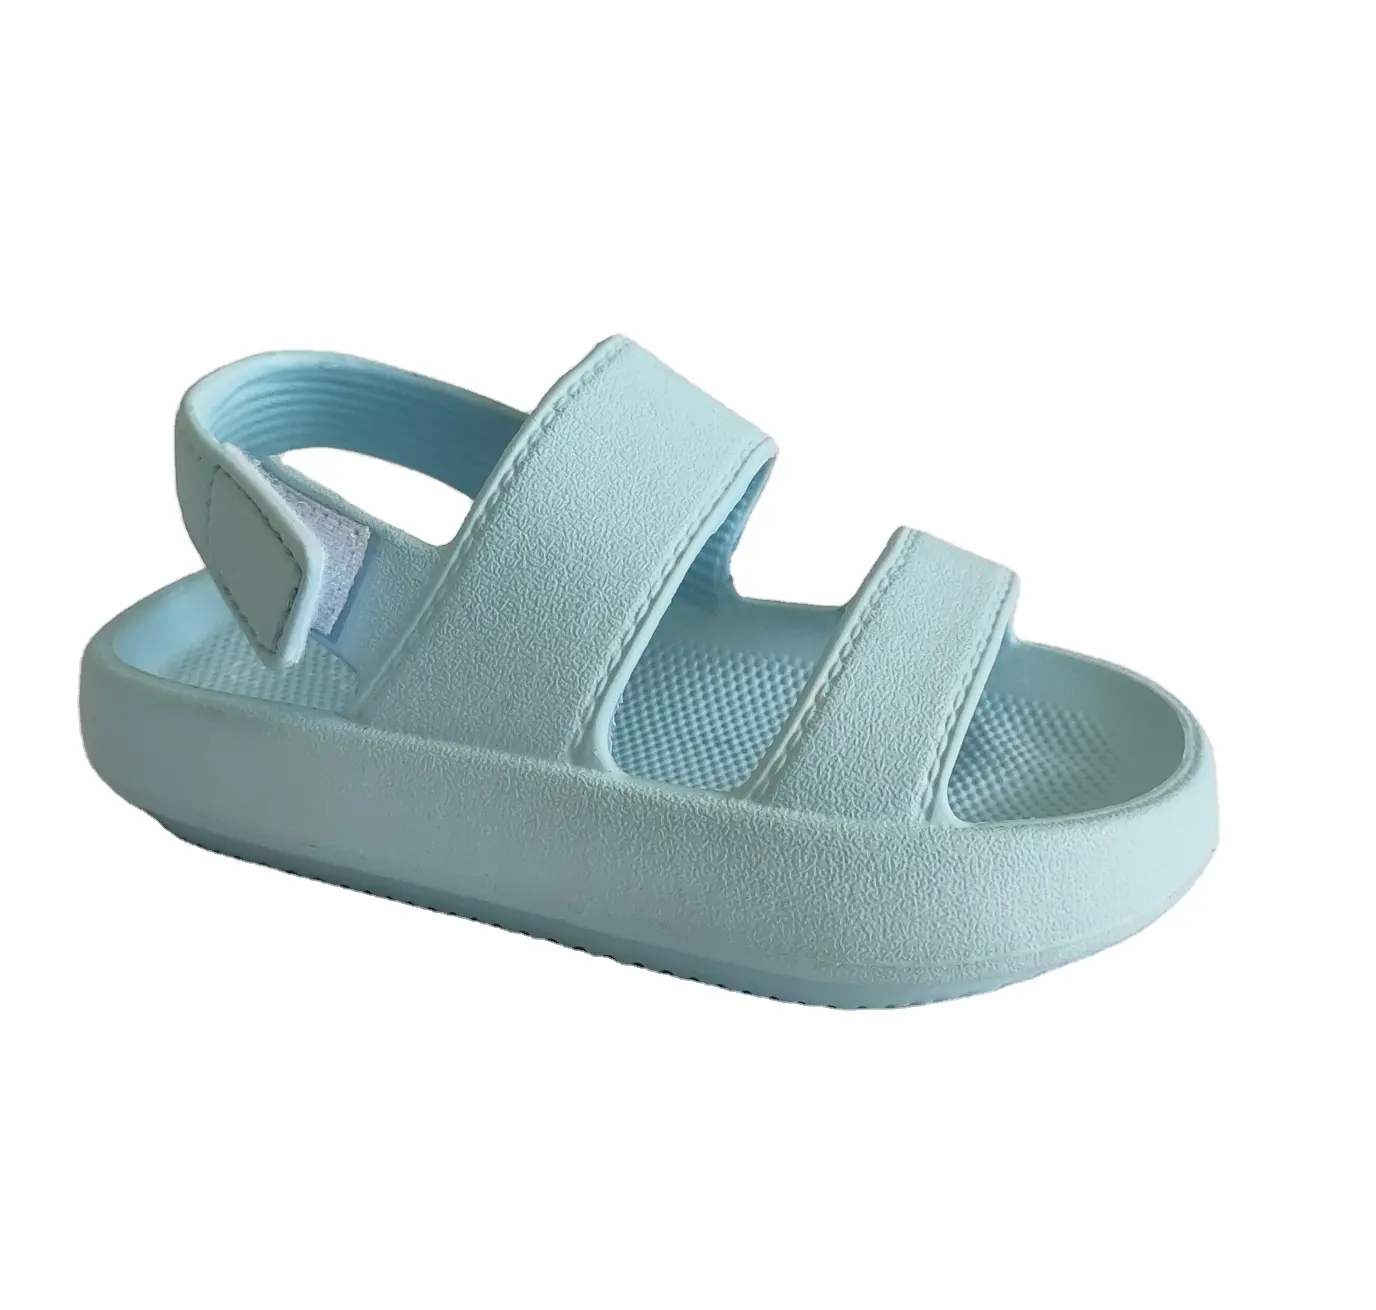 Sandali in schiuma morbida leggera all'ingrosso scarpe da spiaggia per bambini sandali estivi per neonato e ragazza ecologici